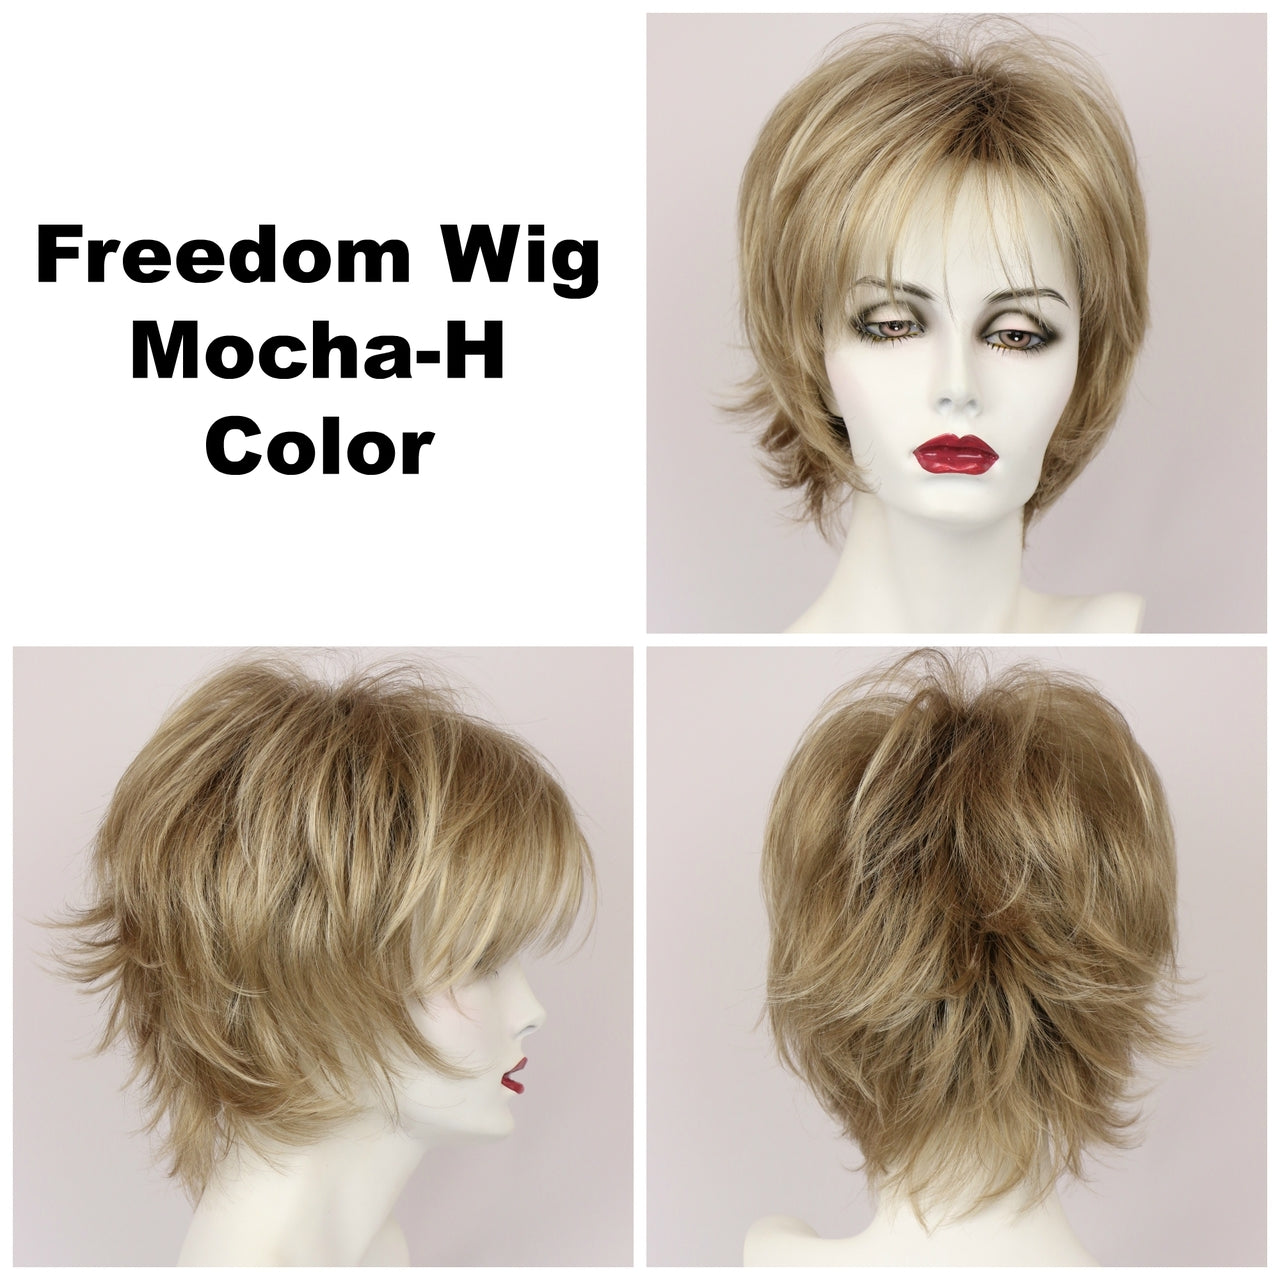 Mocha-H / Freedom w/ Roots / Medium Wig